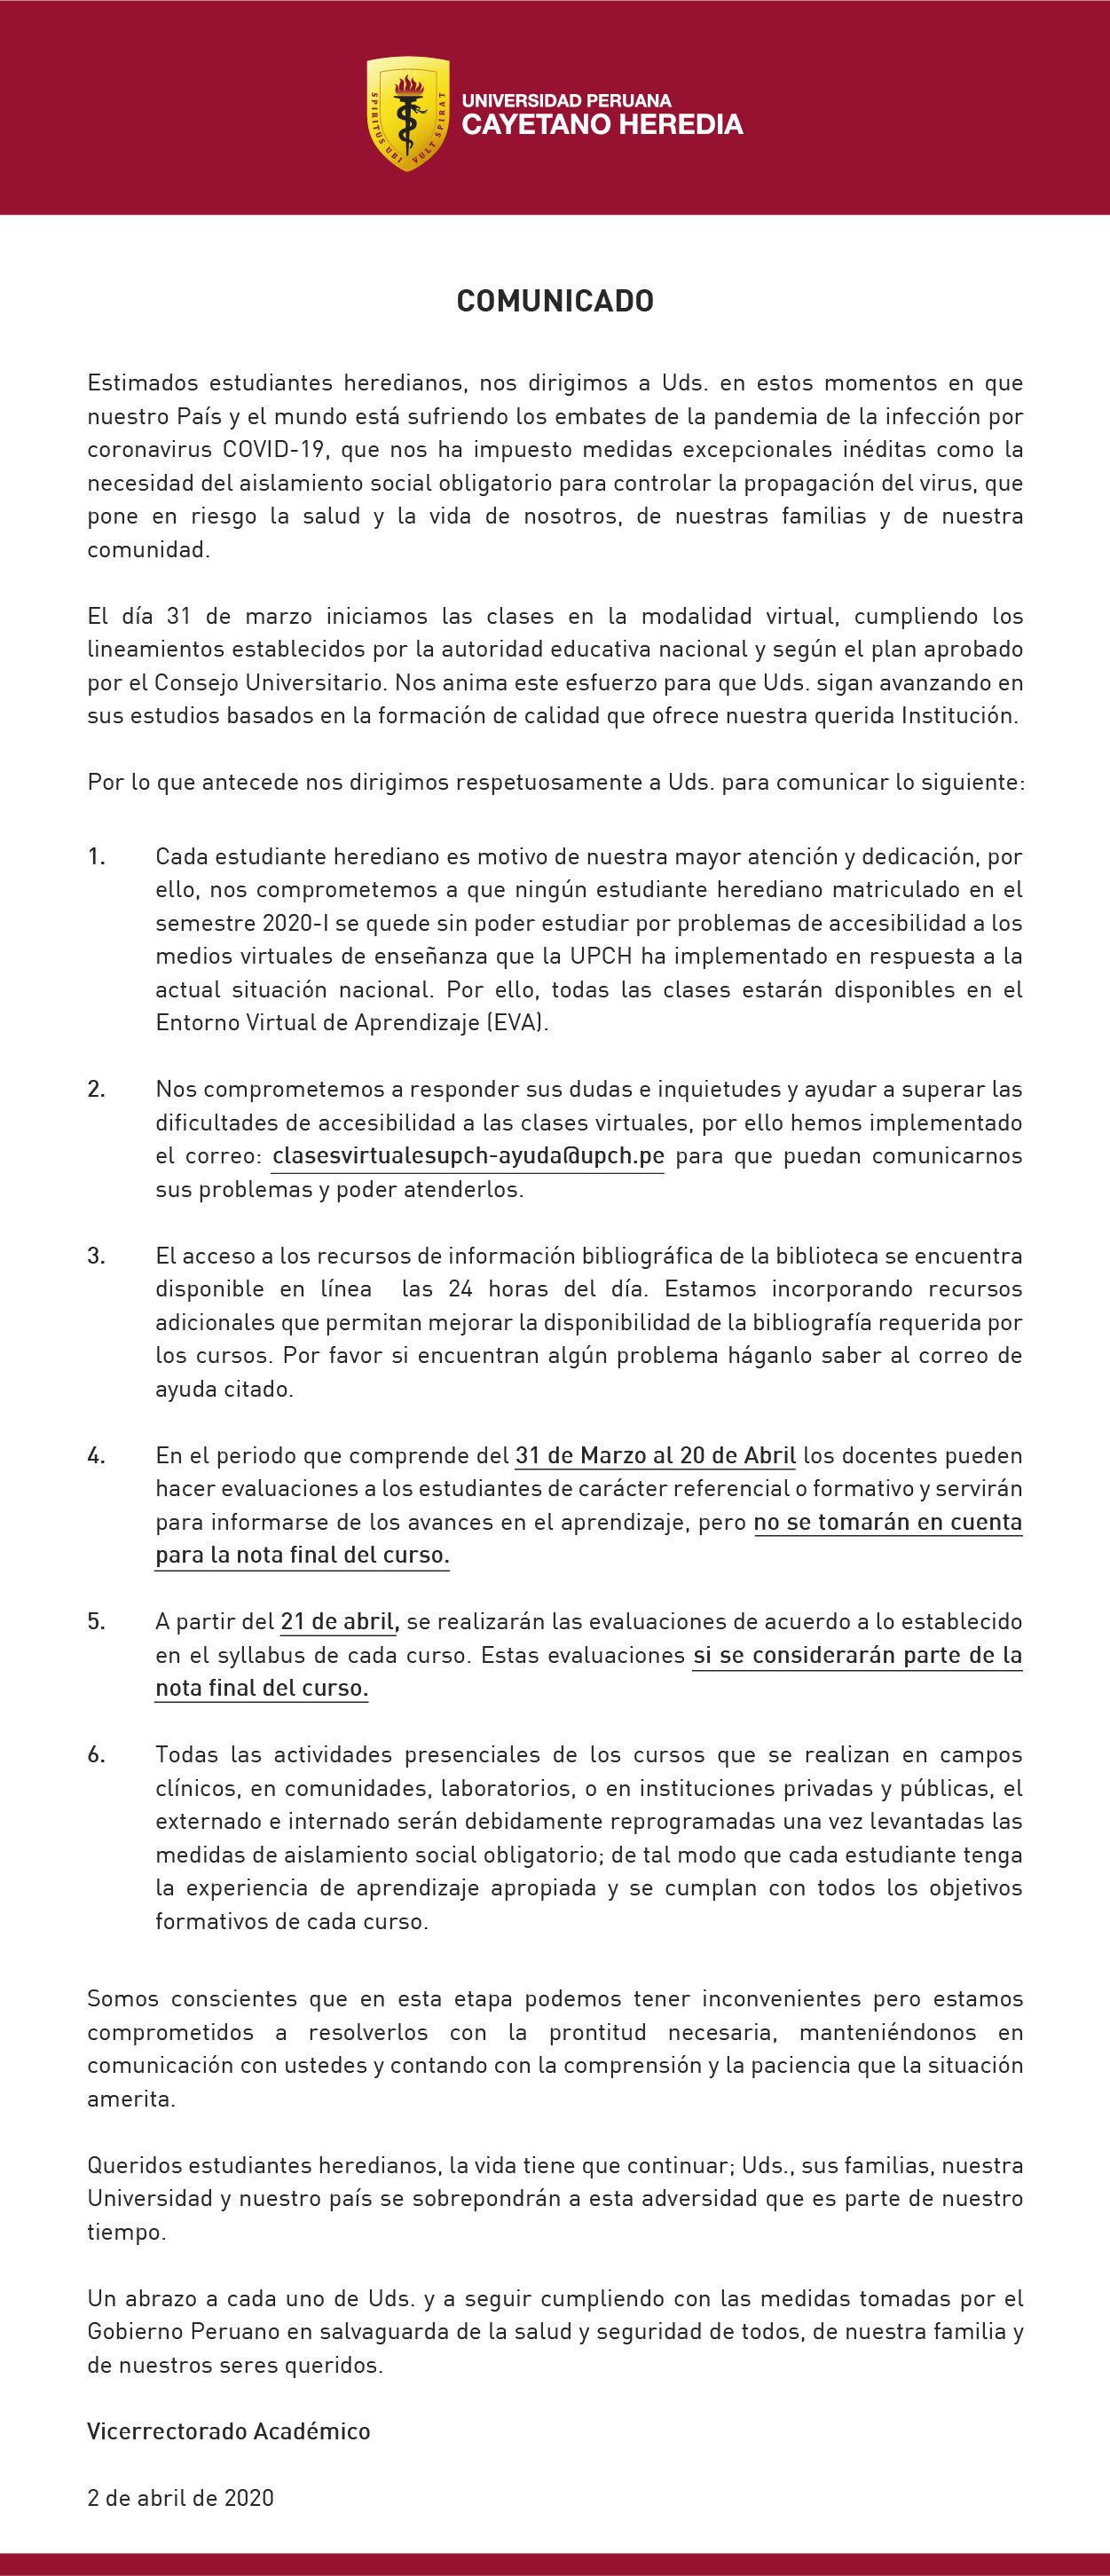 comunicado_del_vicerrectorado_academico_2_de_abril-2020